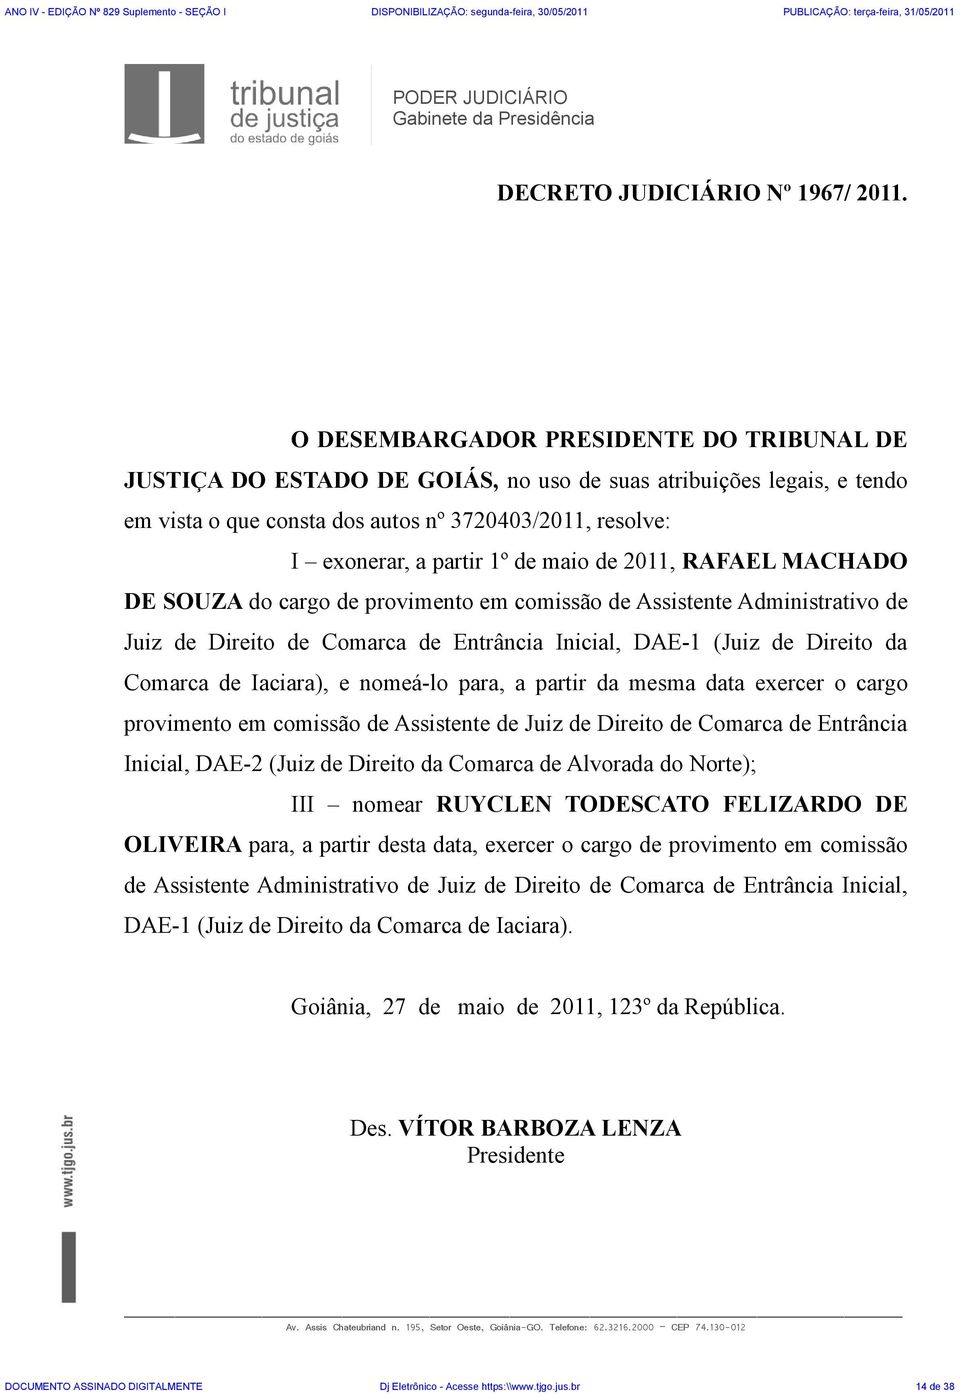 maio de 2011, RAFAEL MACHADO DE SOUZA do cargo de provimento em comissão de Assistente Administrativo de Juiz de Direito de Comarca de Entrância Inicial, DAE-1 (Juiz de Direito da Comarca de